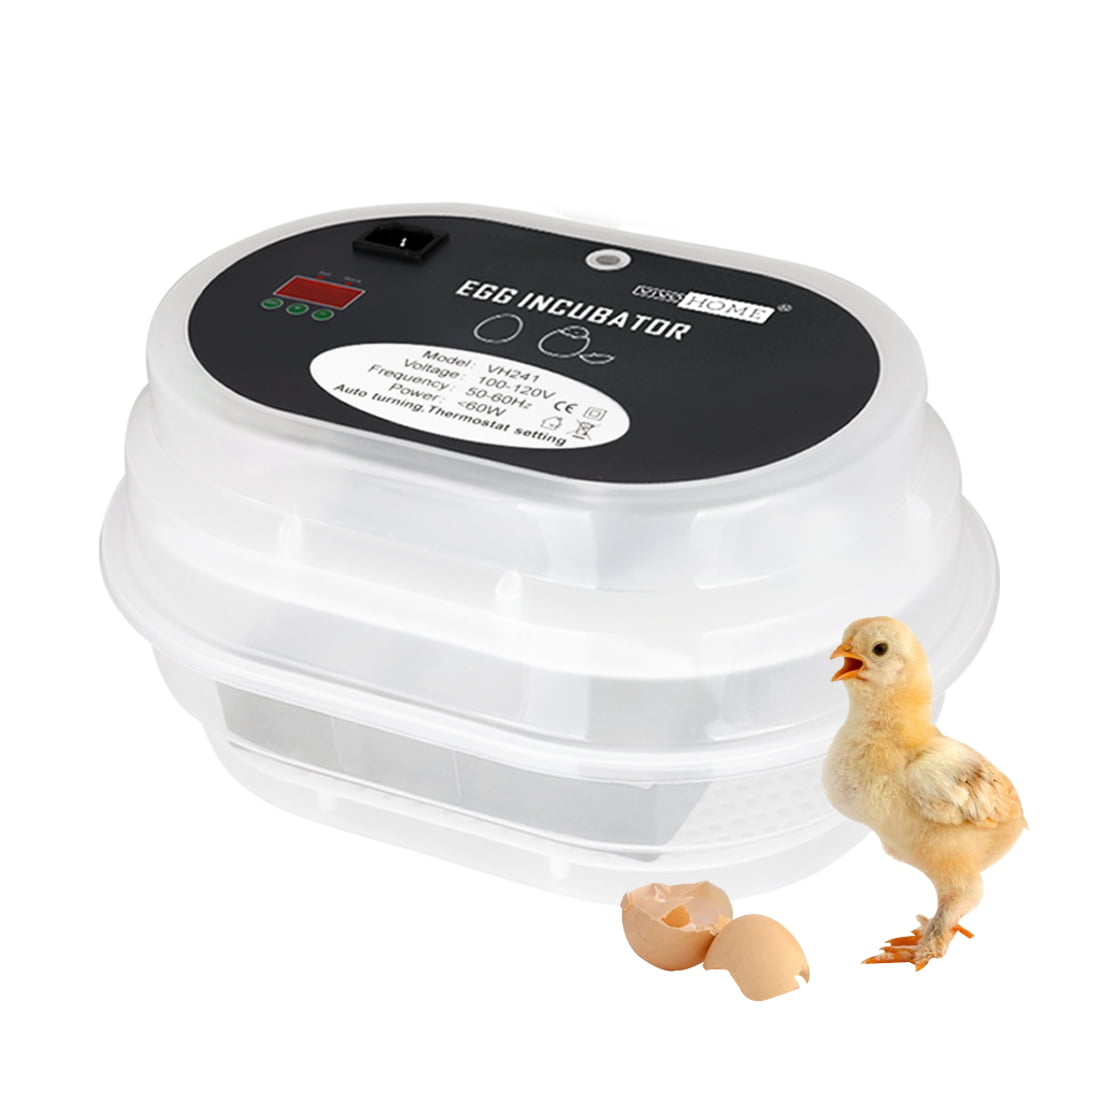 Durable Storage Tray Holds 30 Egg Incubator Turkey Duck Chicken Breeder Supply 